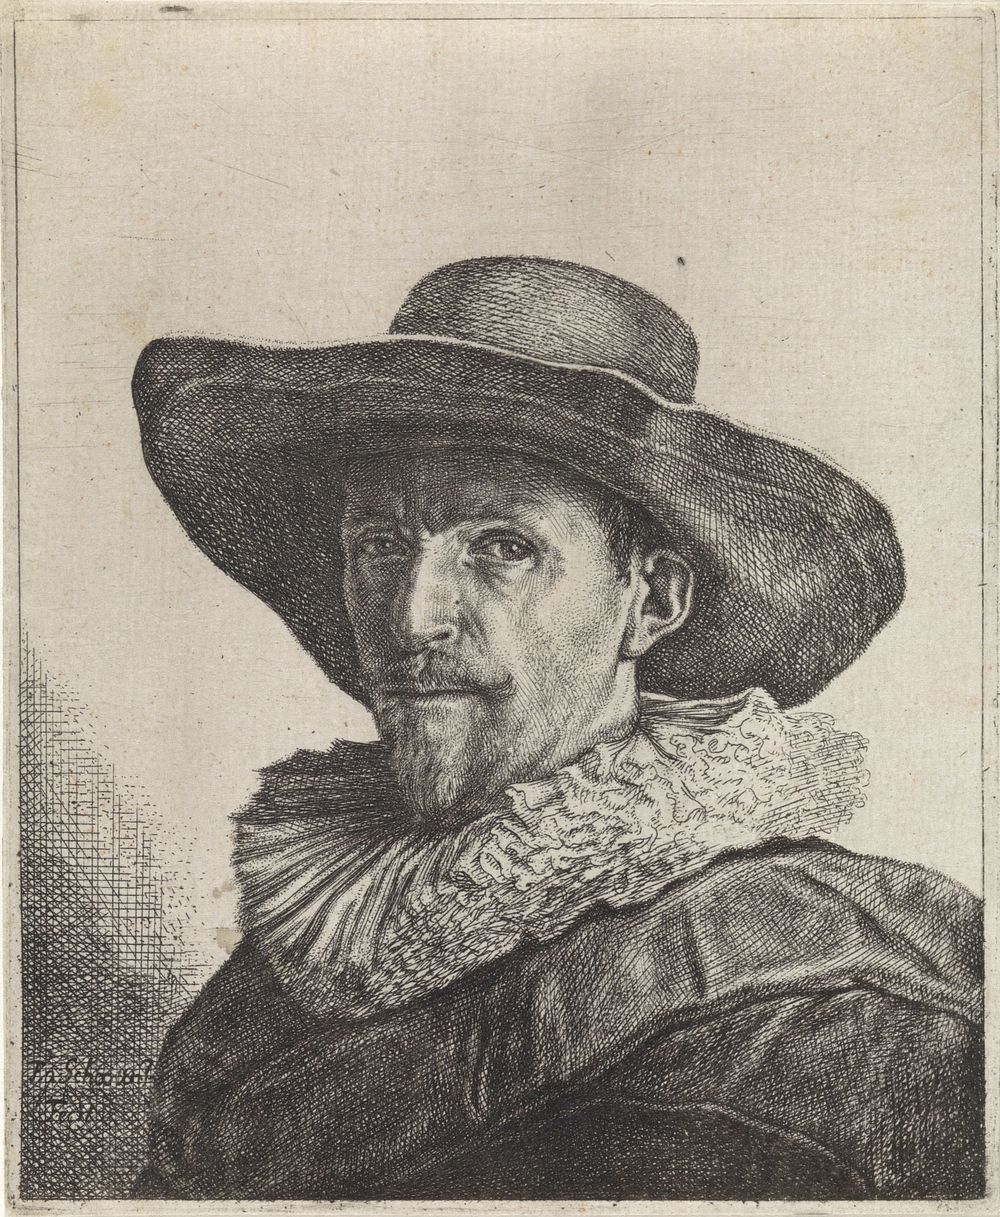 Portret van een man met een grote hoed op (1596 - 1646) by Franciscus van Schooten I